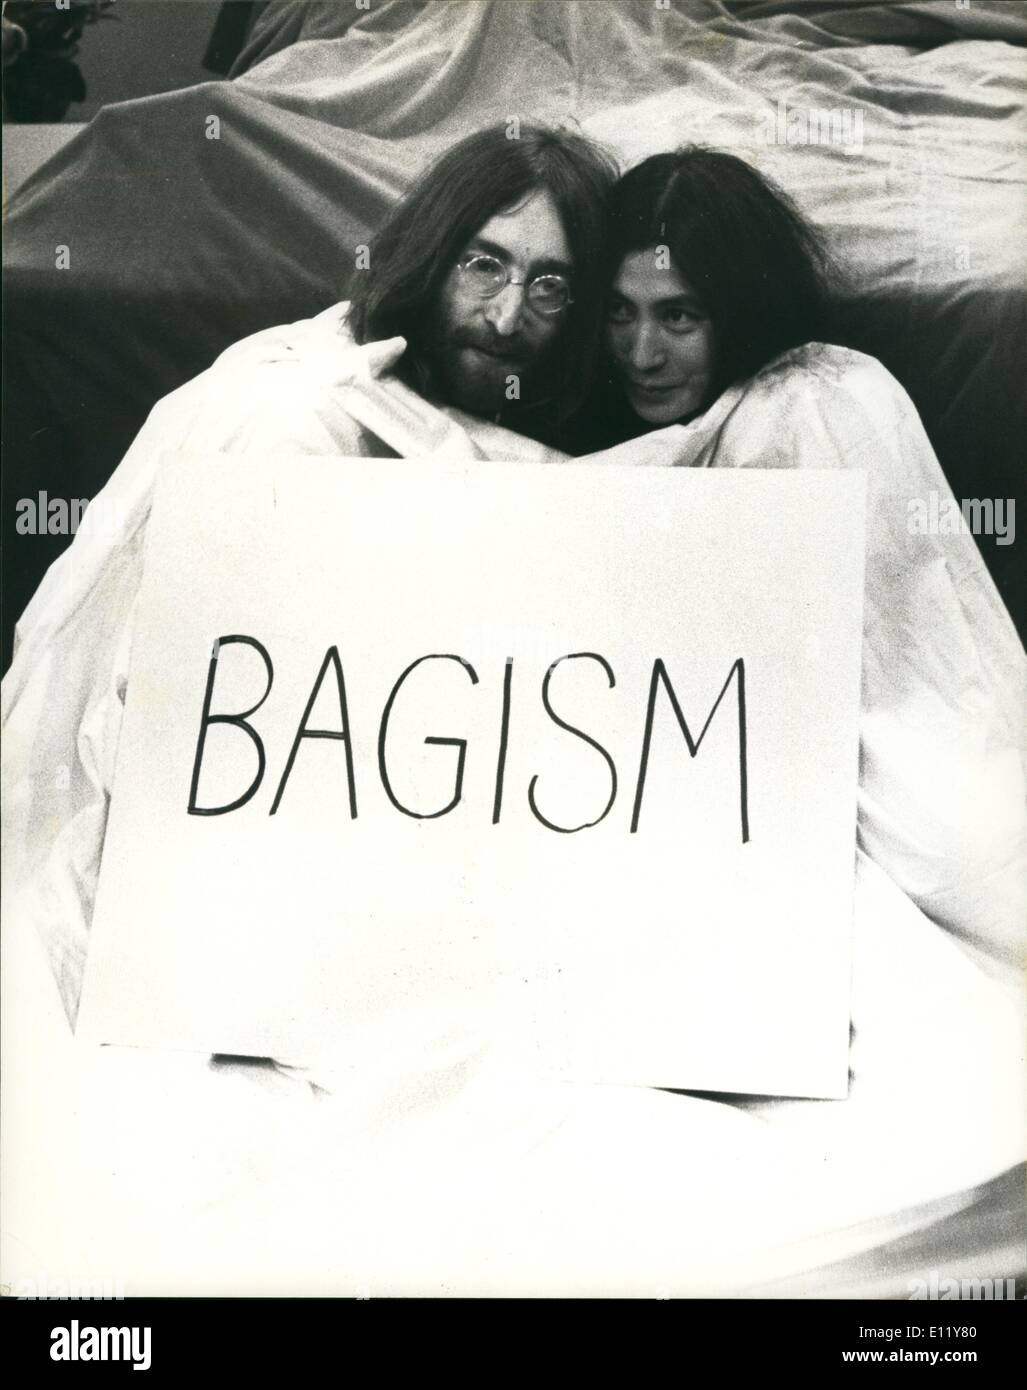 Le 12 décembre 1980 - John Lennon a été tiré cinq fois à l'extérieur de son appartement à New York hier soir. Photo : John Lennon et sa femme Yoko Ono de sortir d'un grand sac avant d'apparaître sur le programme de télévision "Aujourd'hui" (avril 1969). C'était peu après leur retour à Londres après leur mariage à Reykjavik et leur amour à Amsterdam. Banque D'Images